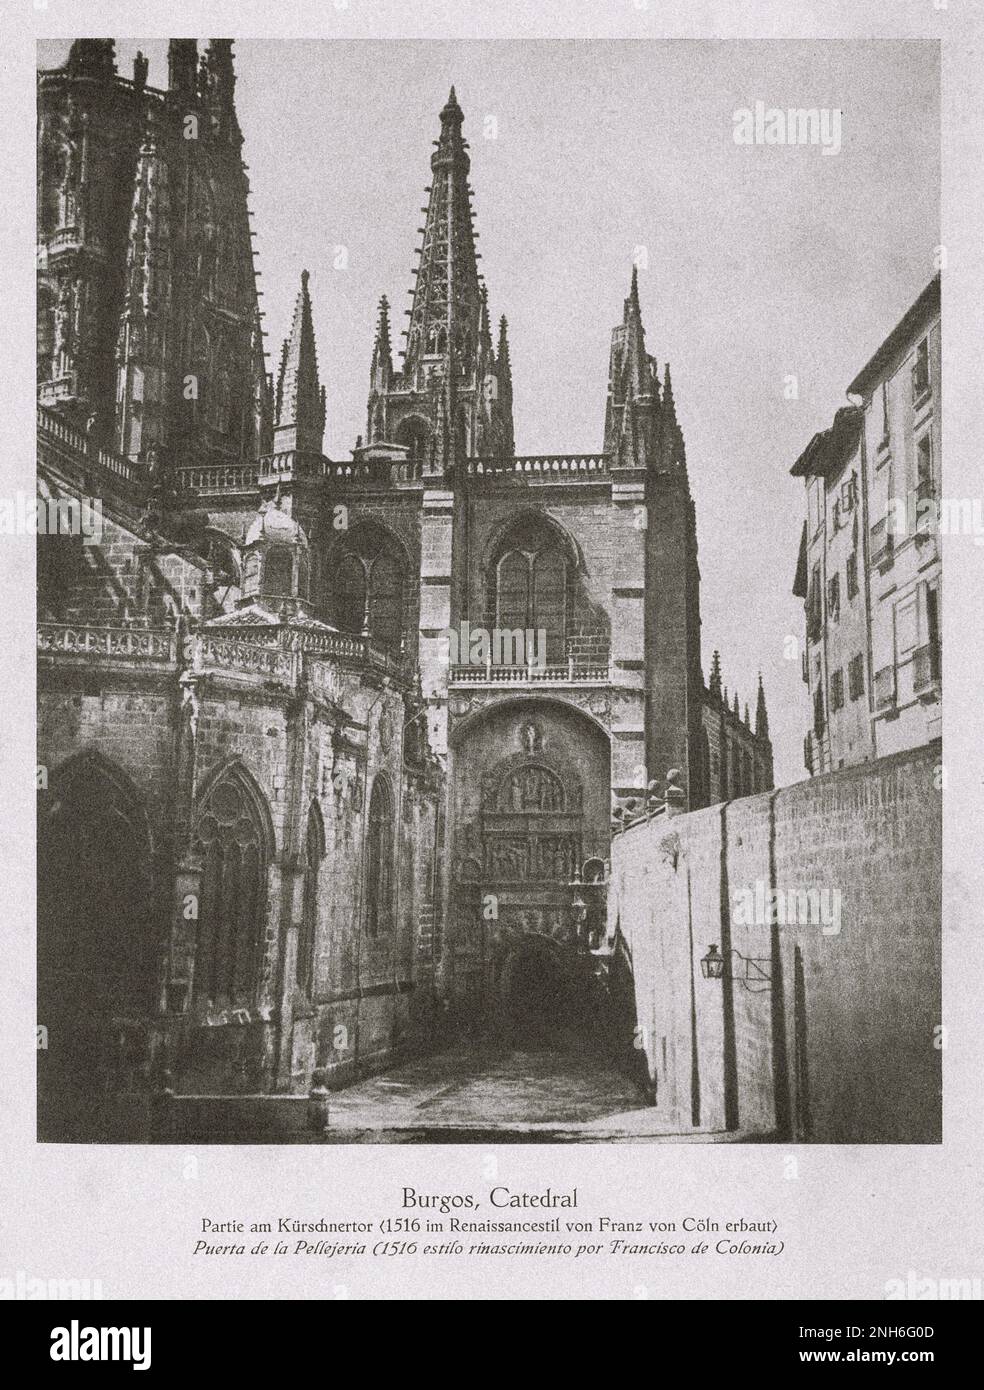 Architektur des alten Spaniens. Oldtimer-Foto der Kathedrale von Burgos. Pellejería-Tor, das 1516 von Francisco de Colonía im Renaissance-Stil erbaut wurde Stockfoto